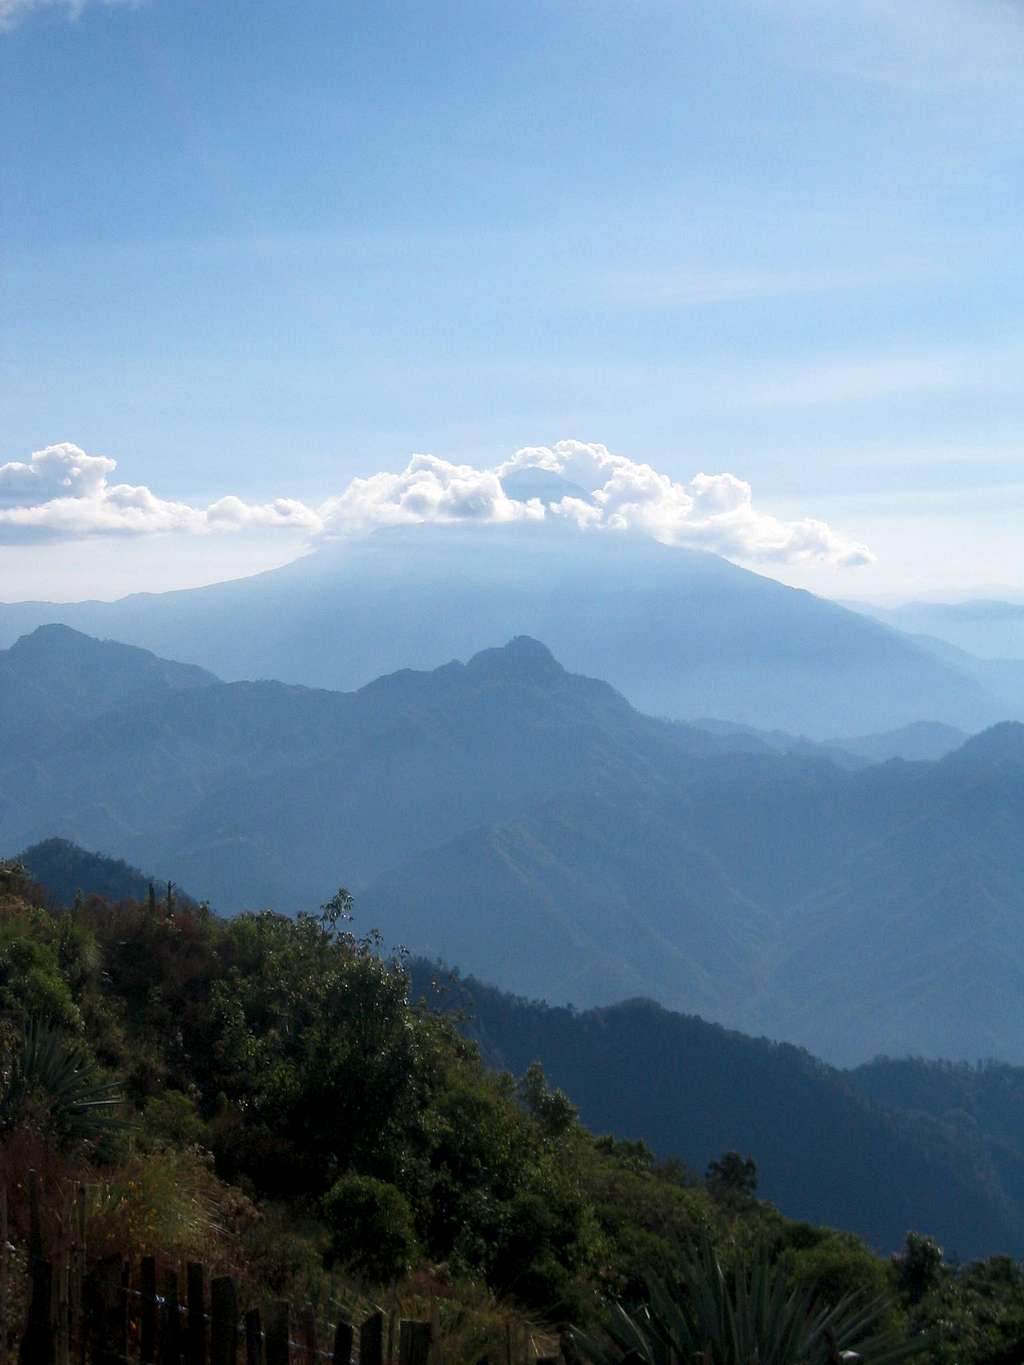 Volcan Tajumulco, from the Tacana